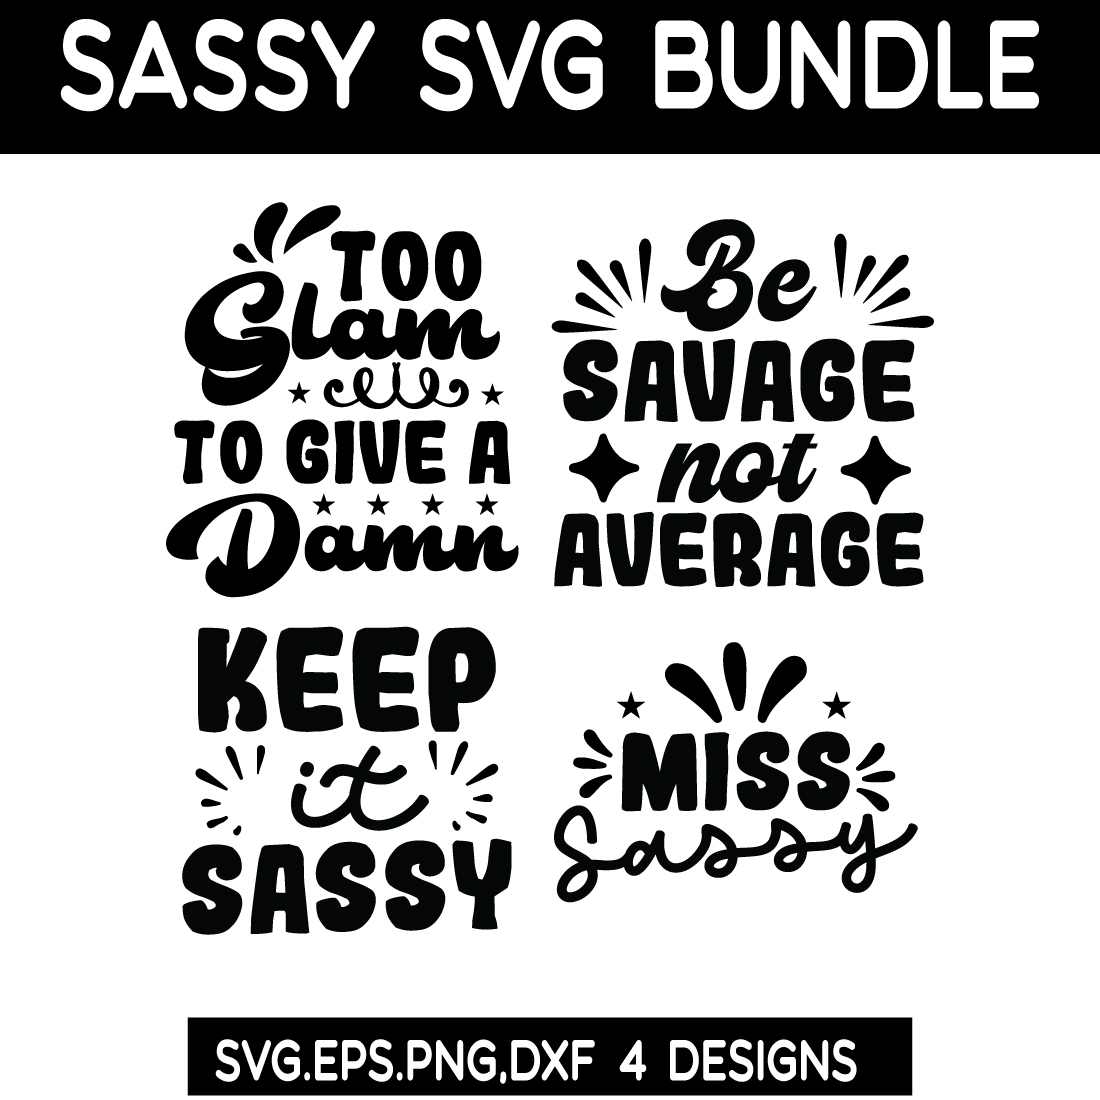 Sassy SVG bundle cover image.